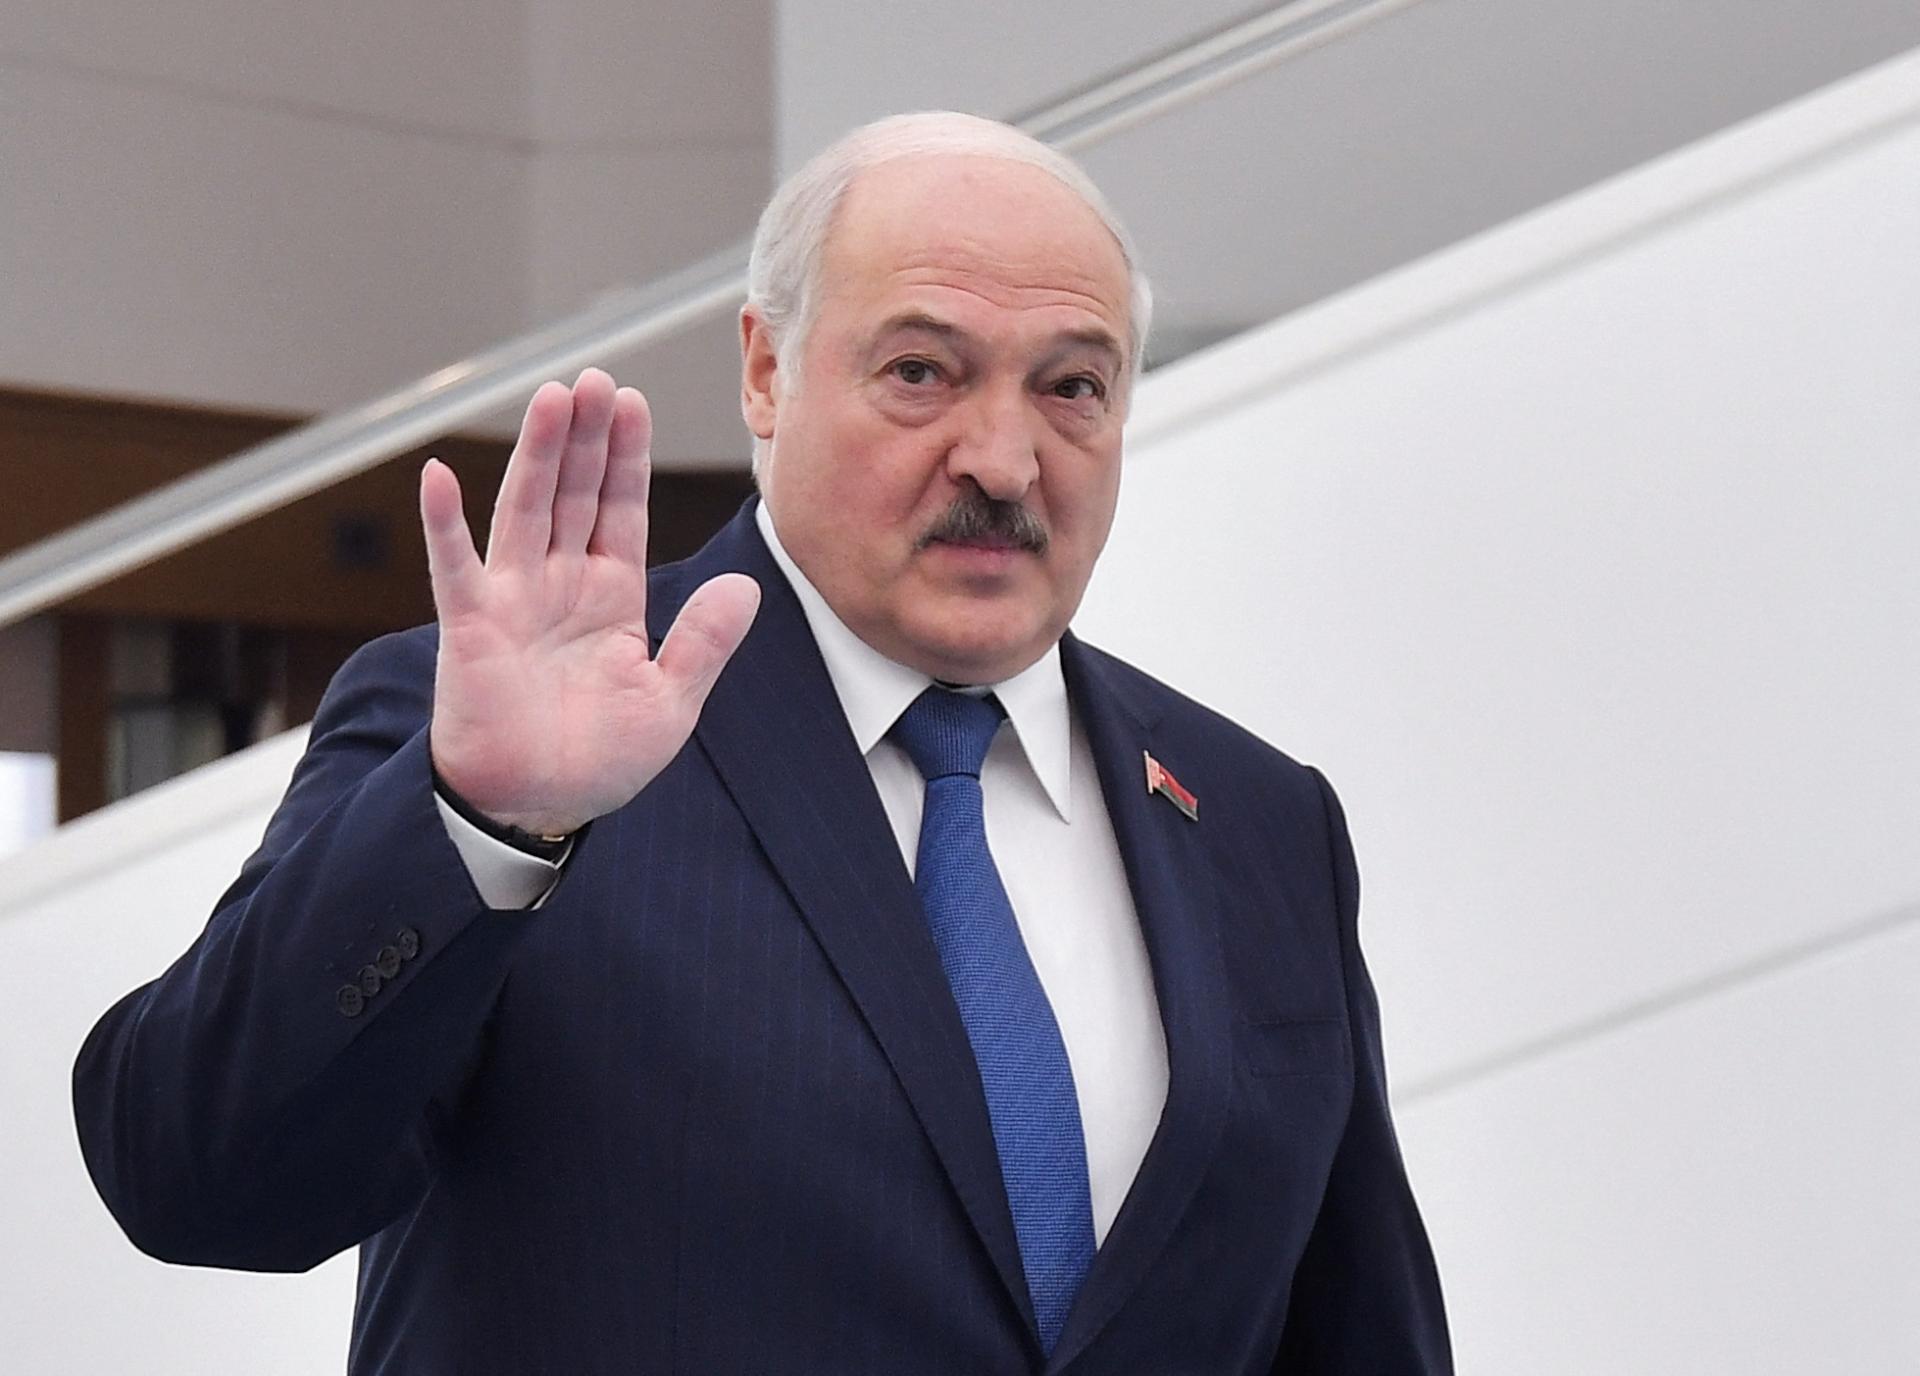 Ukrajina by sa mala vrátiť k diplomatickým rokovaniam s Ruskom, inak jej hrozí zánik, vyhlásil Lukašenko